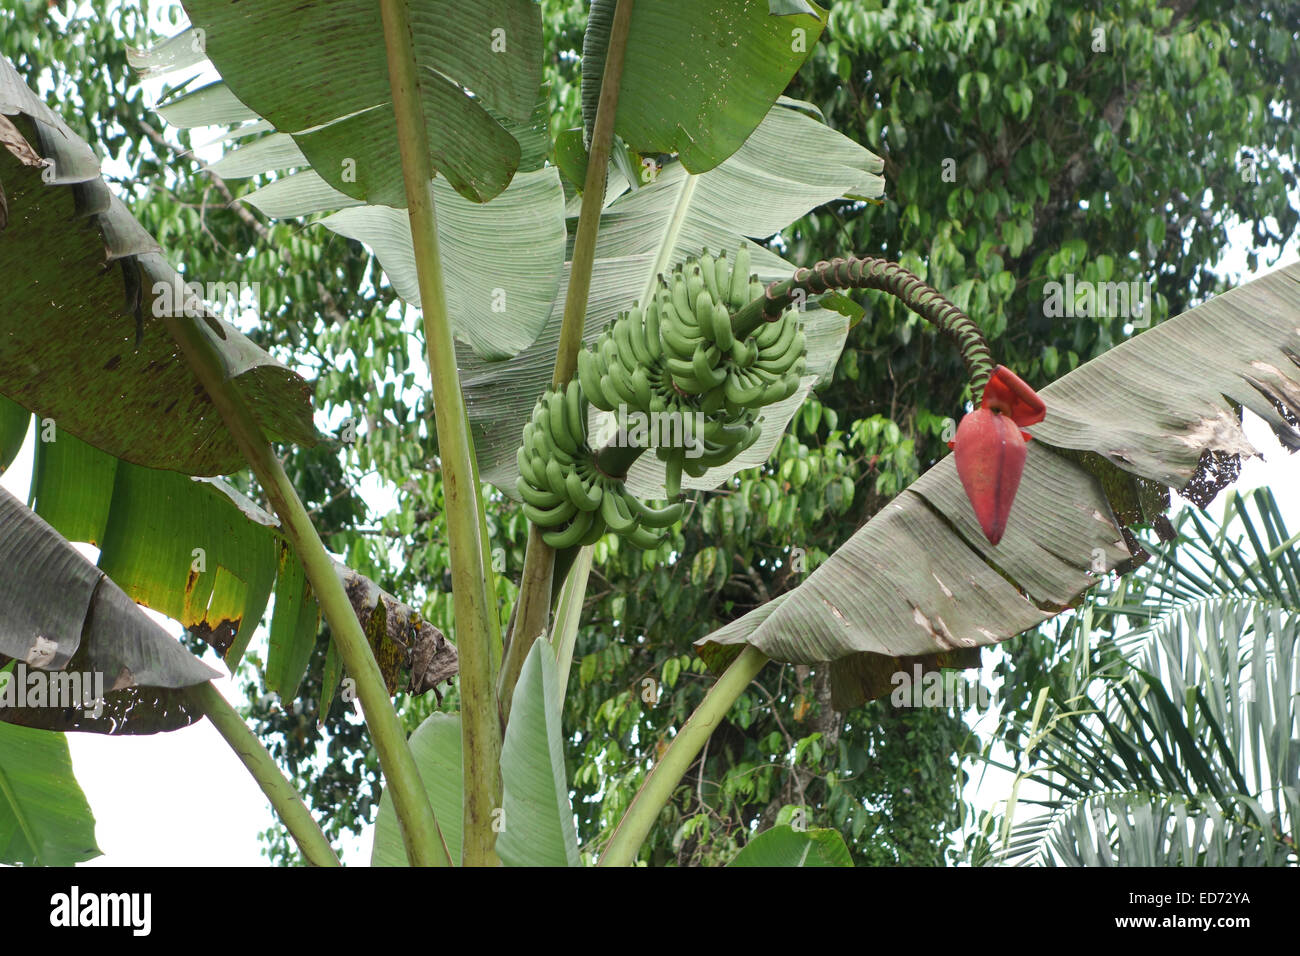 Banana " albero " che mostra la frutta e l'infiorescenza. Thailandia, Sud-est asiatico. Foto Stock